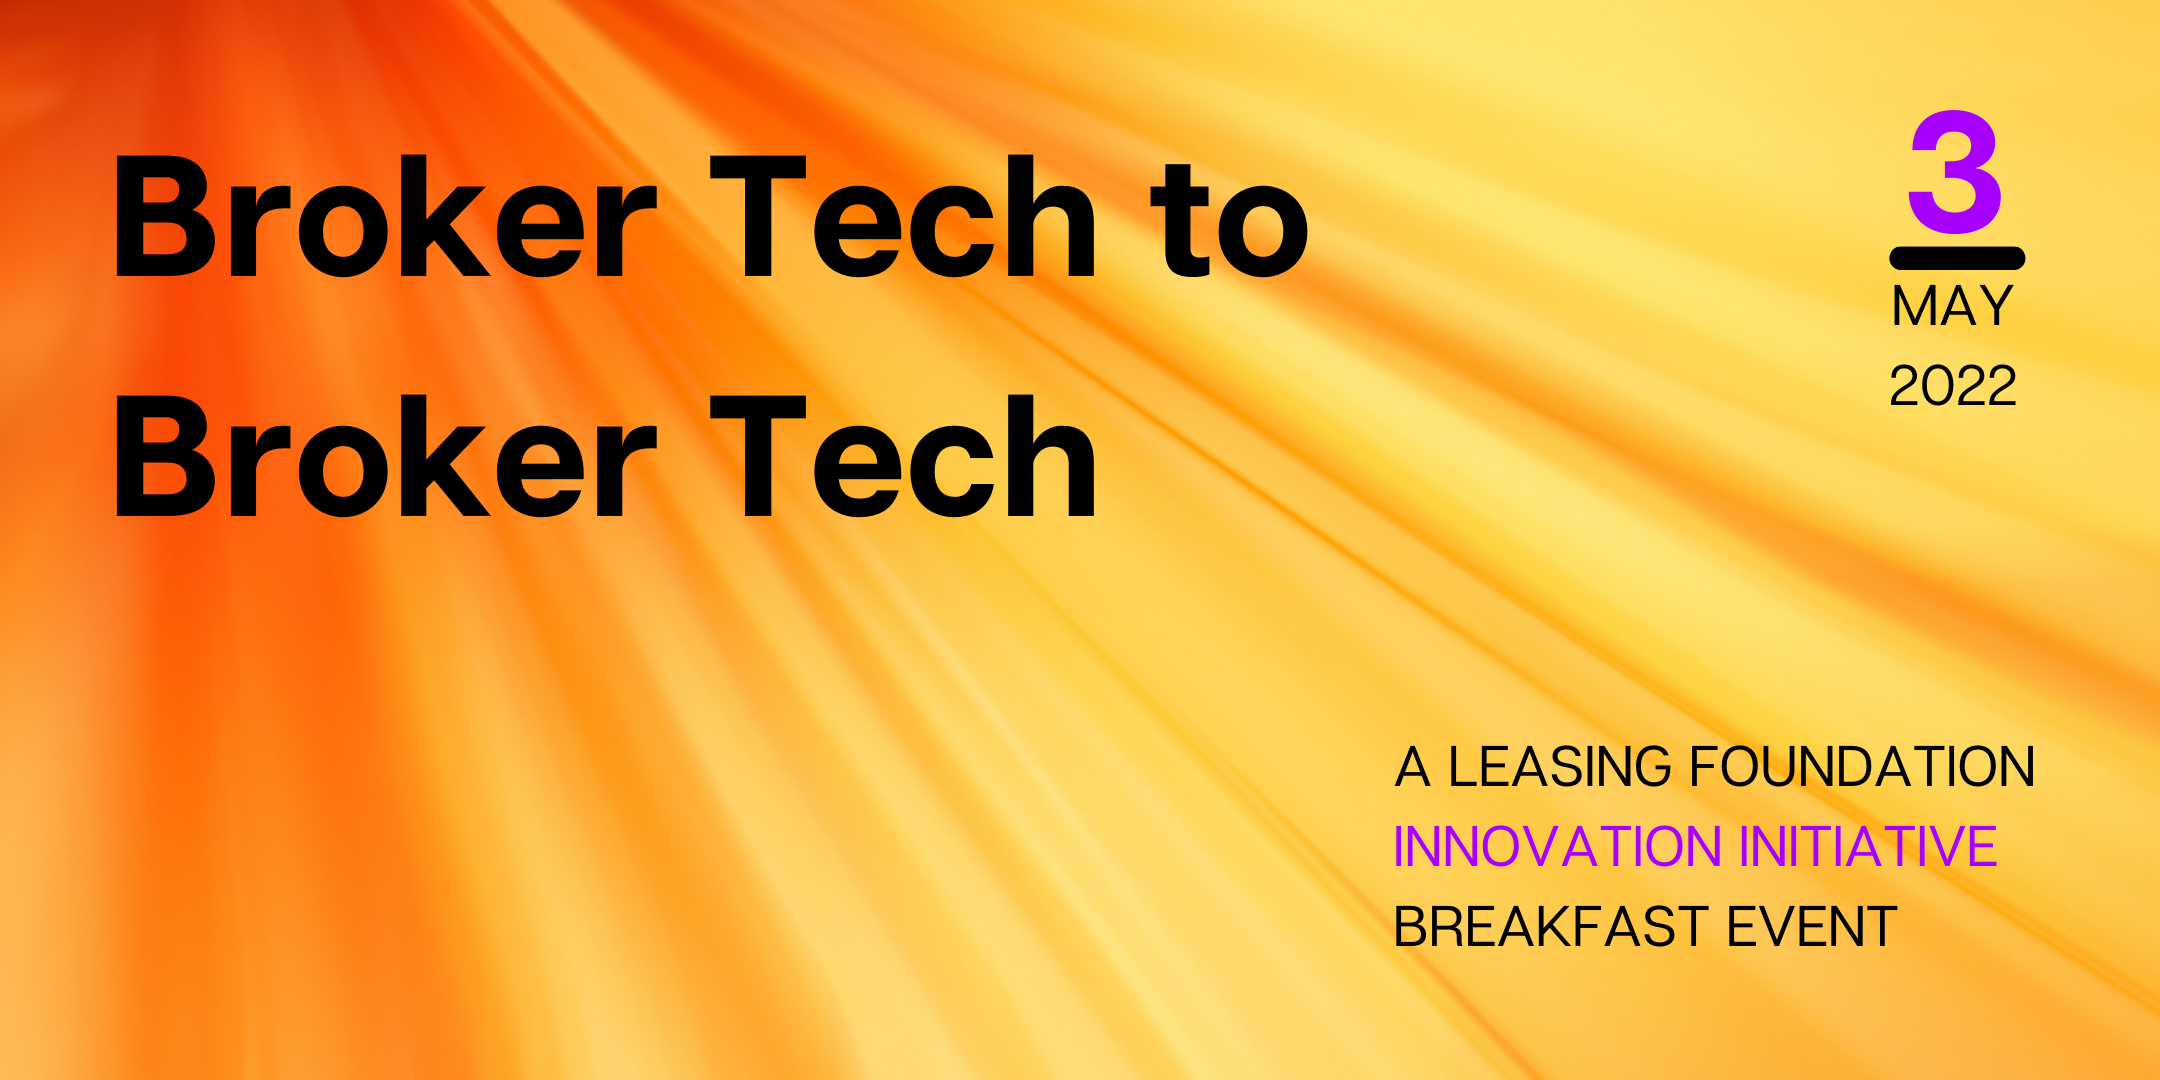 Broker-Tech to Broker-Tech: a LF Innovation Initiative breakfast 03/05/22